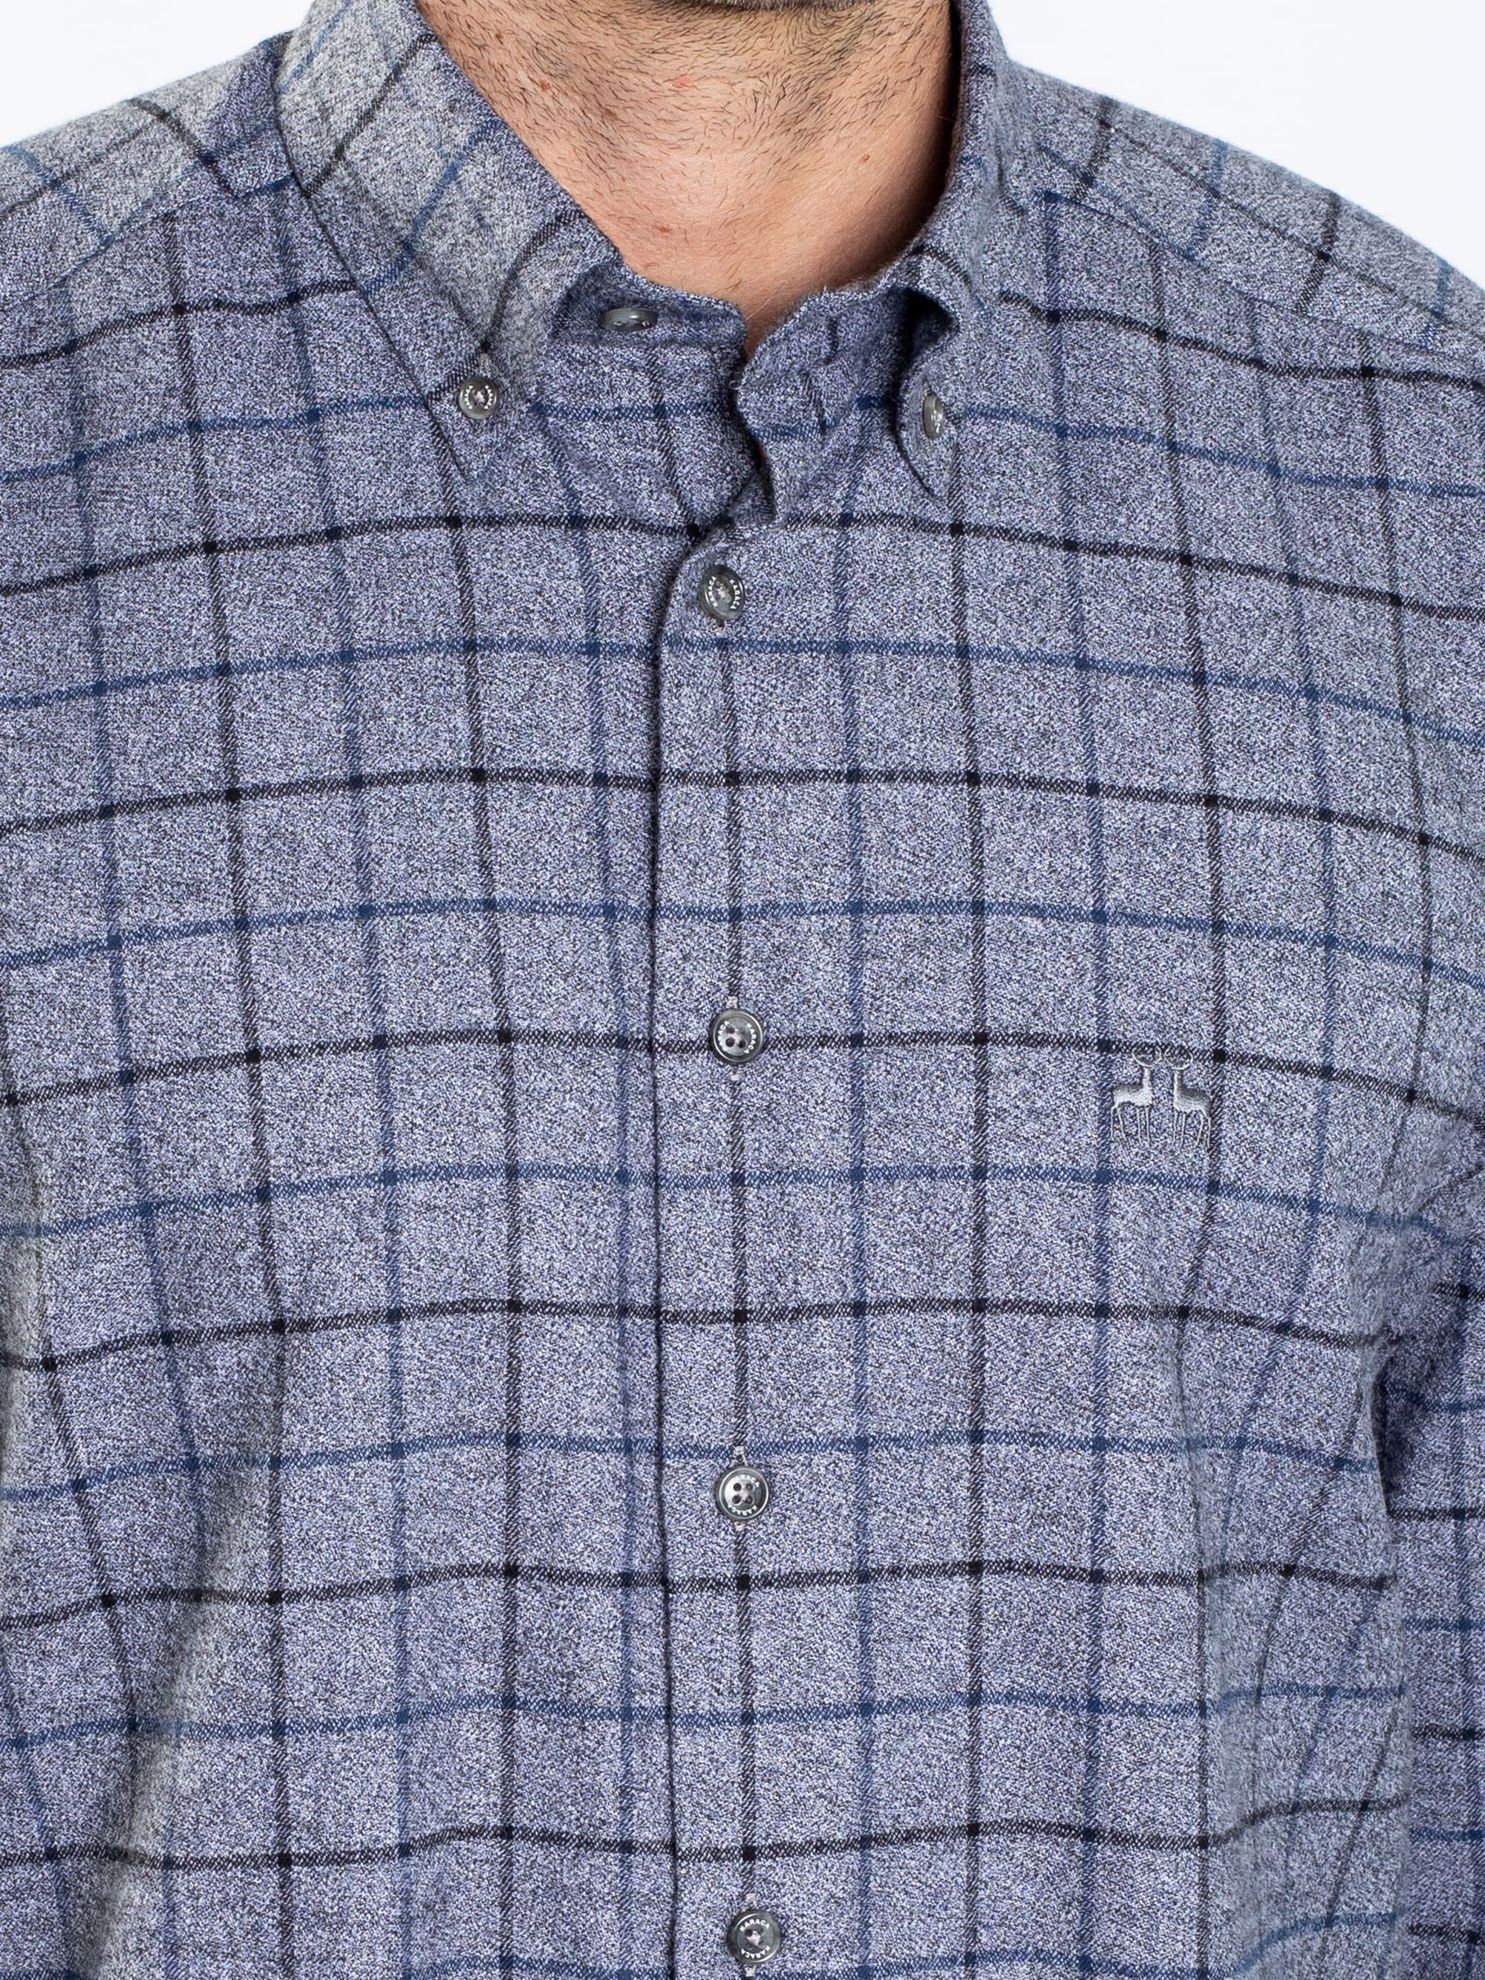 Karaca Erkek Regular Fit Gömlek-Gri Melanj. ürün görseli